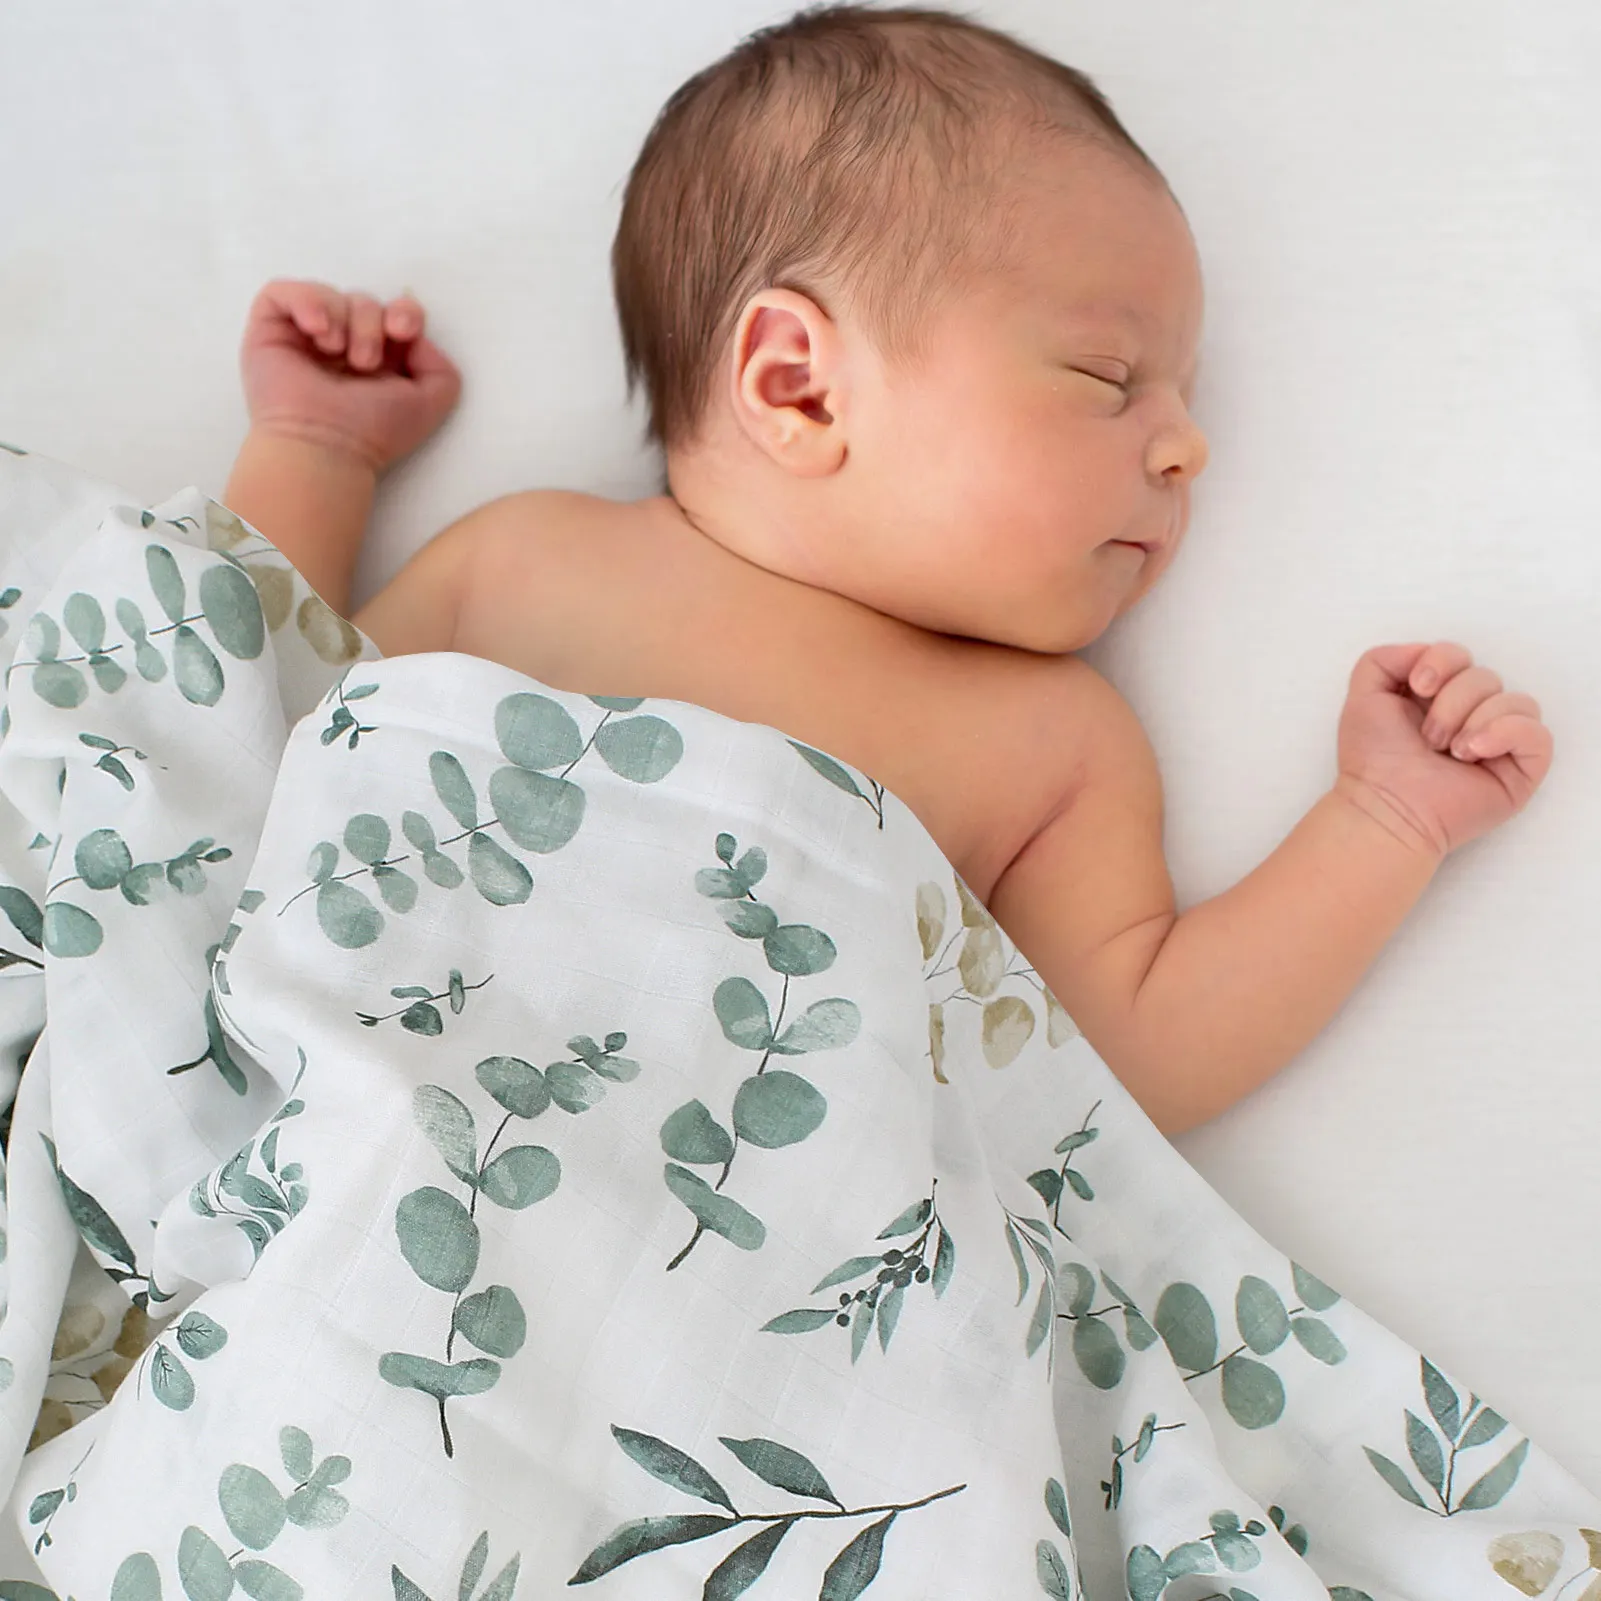 Kaufen Sie China Großhandels-Baby Decke Super Weiche Decken Bulk Musselin  Decke Handtuch Wasserdichte Decke Wasserdichte Decke Für Outdoor-decke  Rohlinge und Decke Großhandelsanbietern zu einem Preis von 1.36 USD